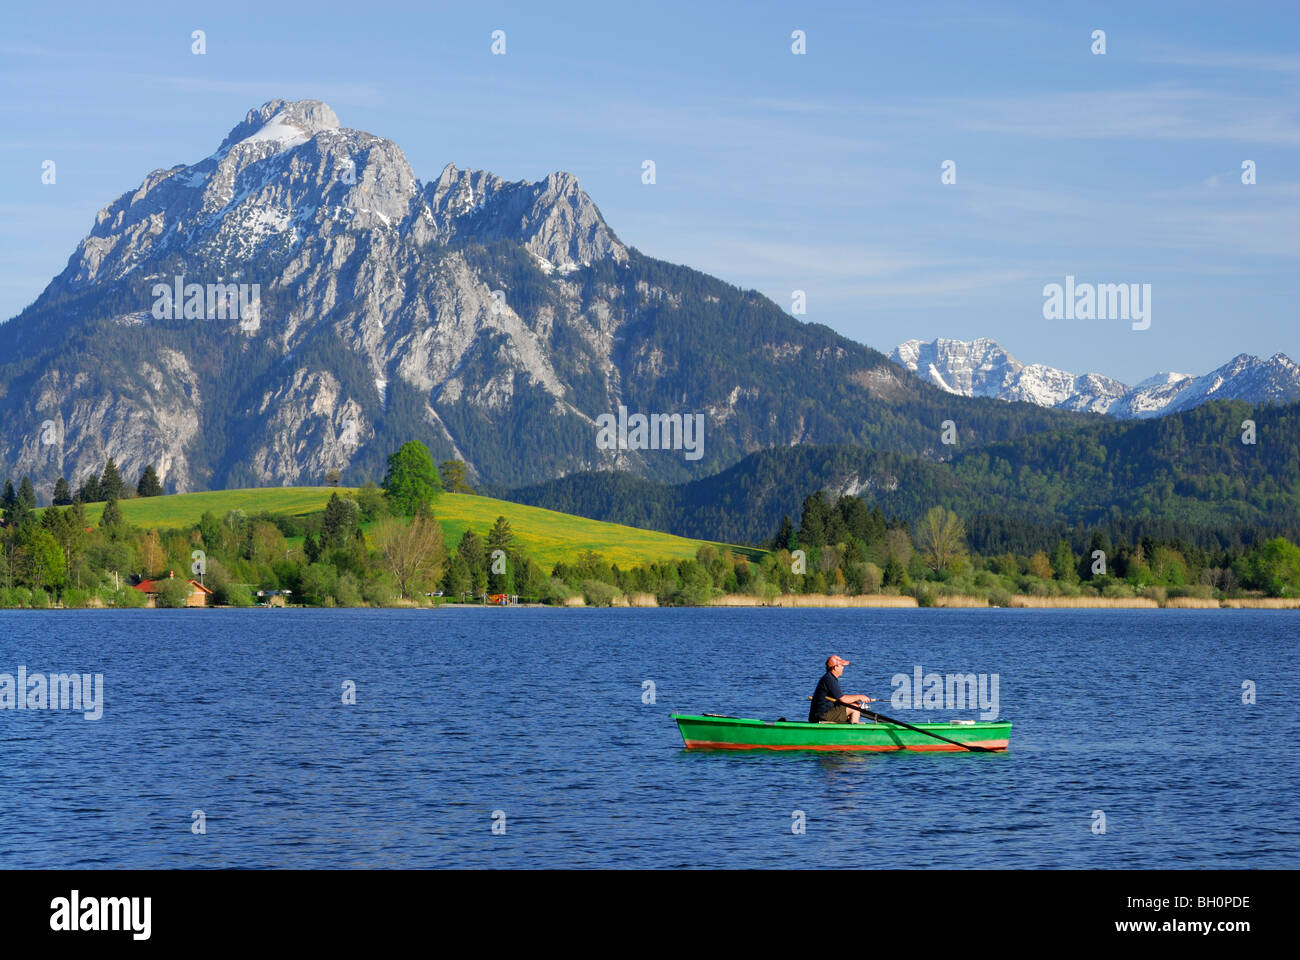 Lancha en el lago Hopfensee Saeuling con montaje en fondo, Allgaeu, suabia, Baviera, Alemania Foto de stock